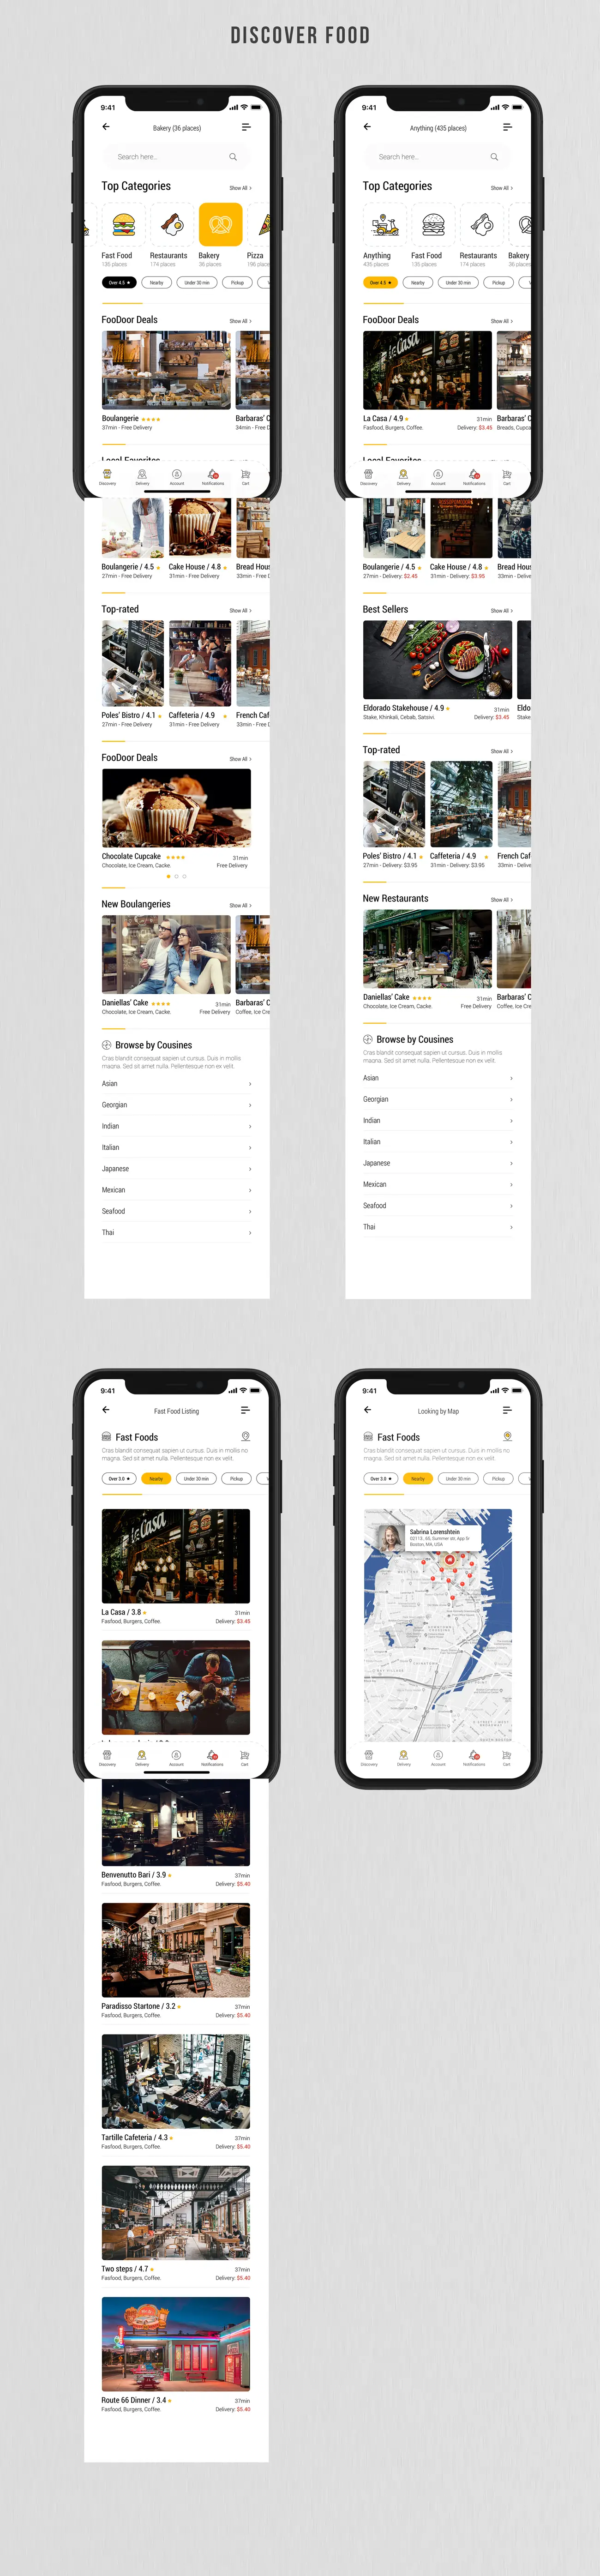 Dobule - Food Delivery UI Kit for Mobile App - 12